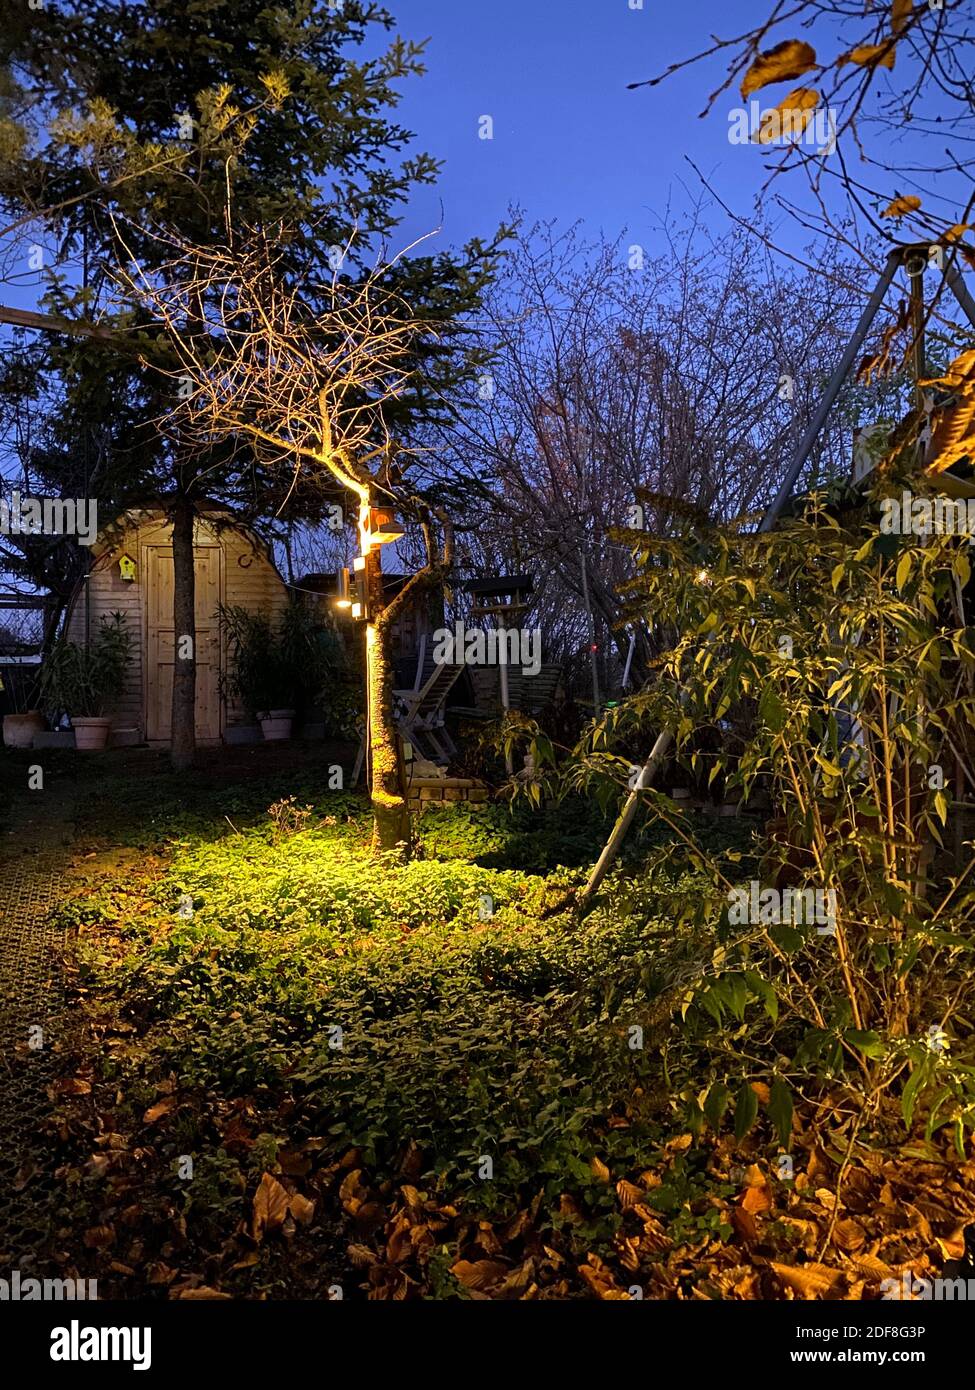 Romantischer Garten Mit Nachtbeleuchtung Stockfoto